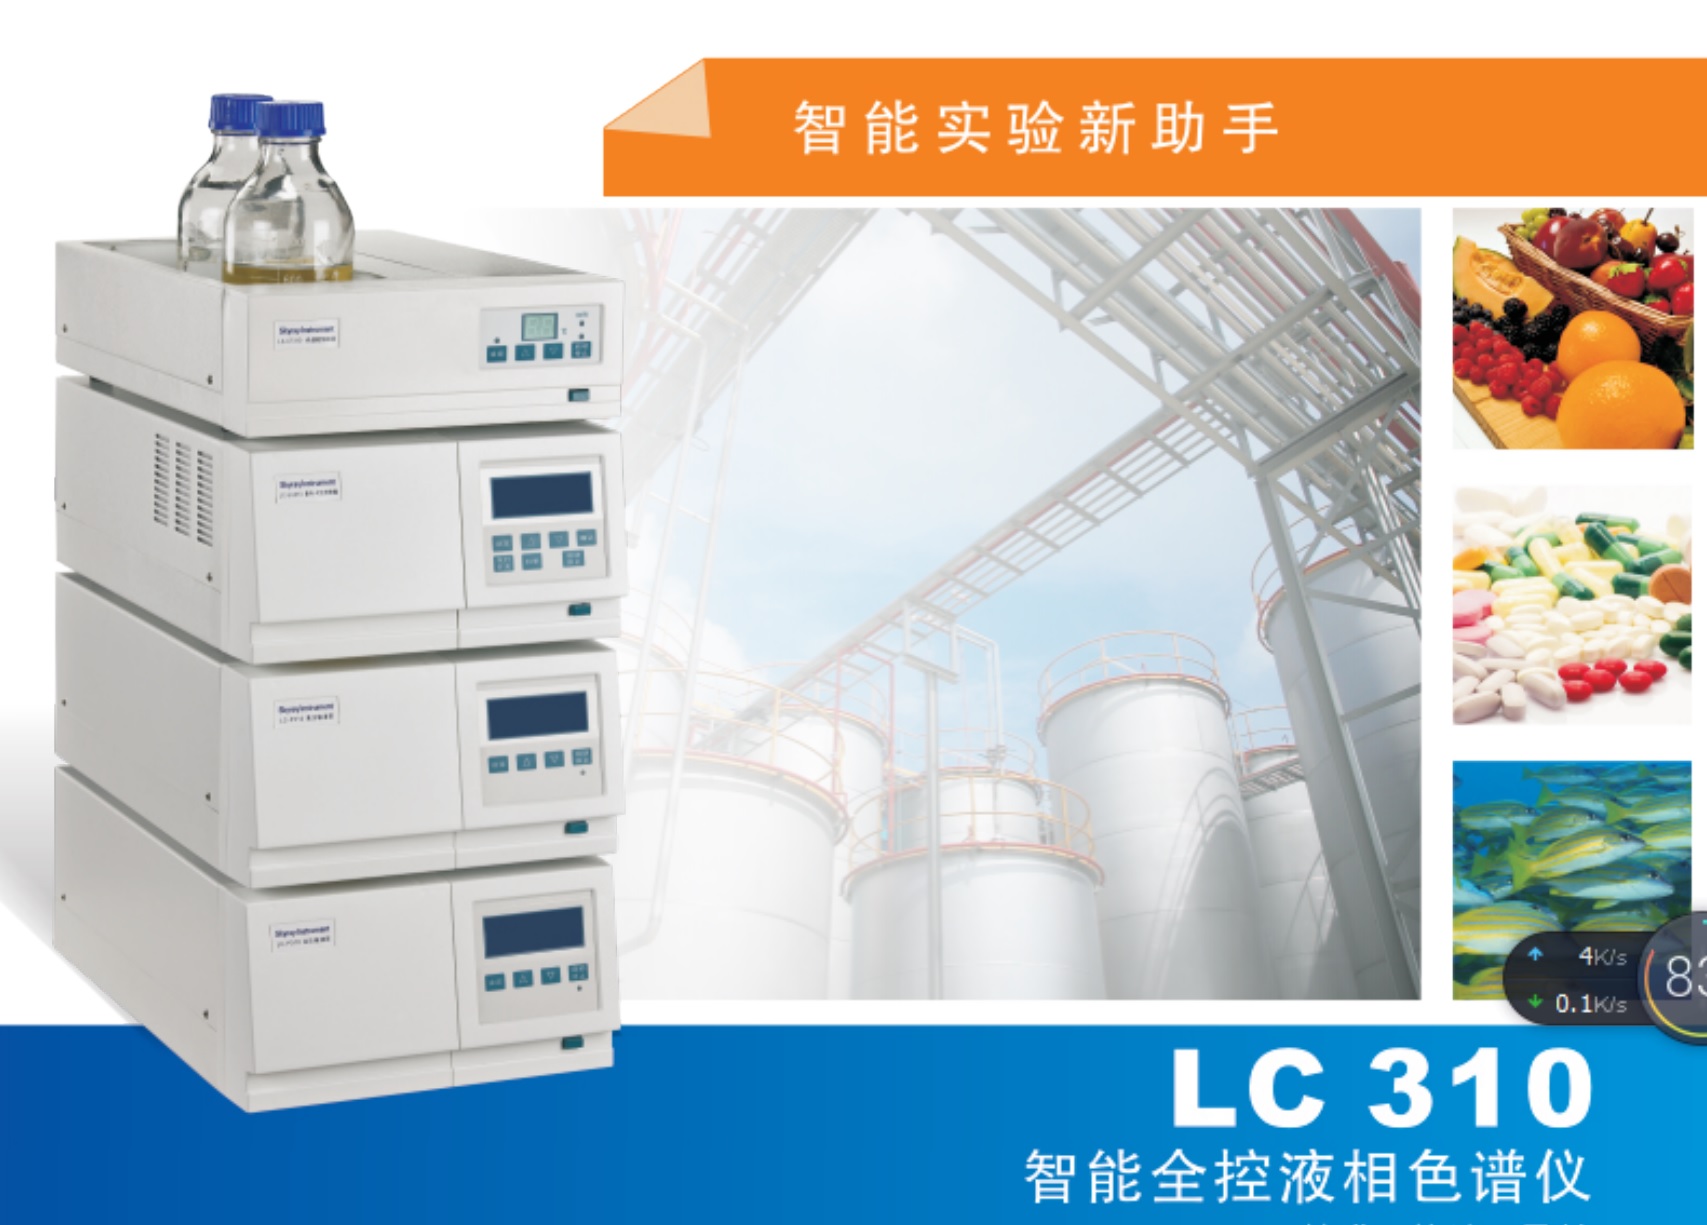 江苏天瑞仪器股份有限公司-LC-310液相色谱针对电子电气产品中ROHS2.0邻苯二甲酸酯